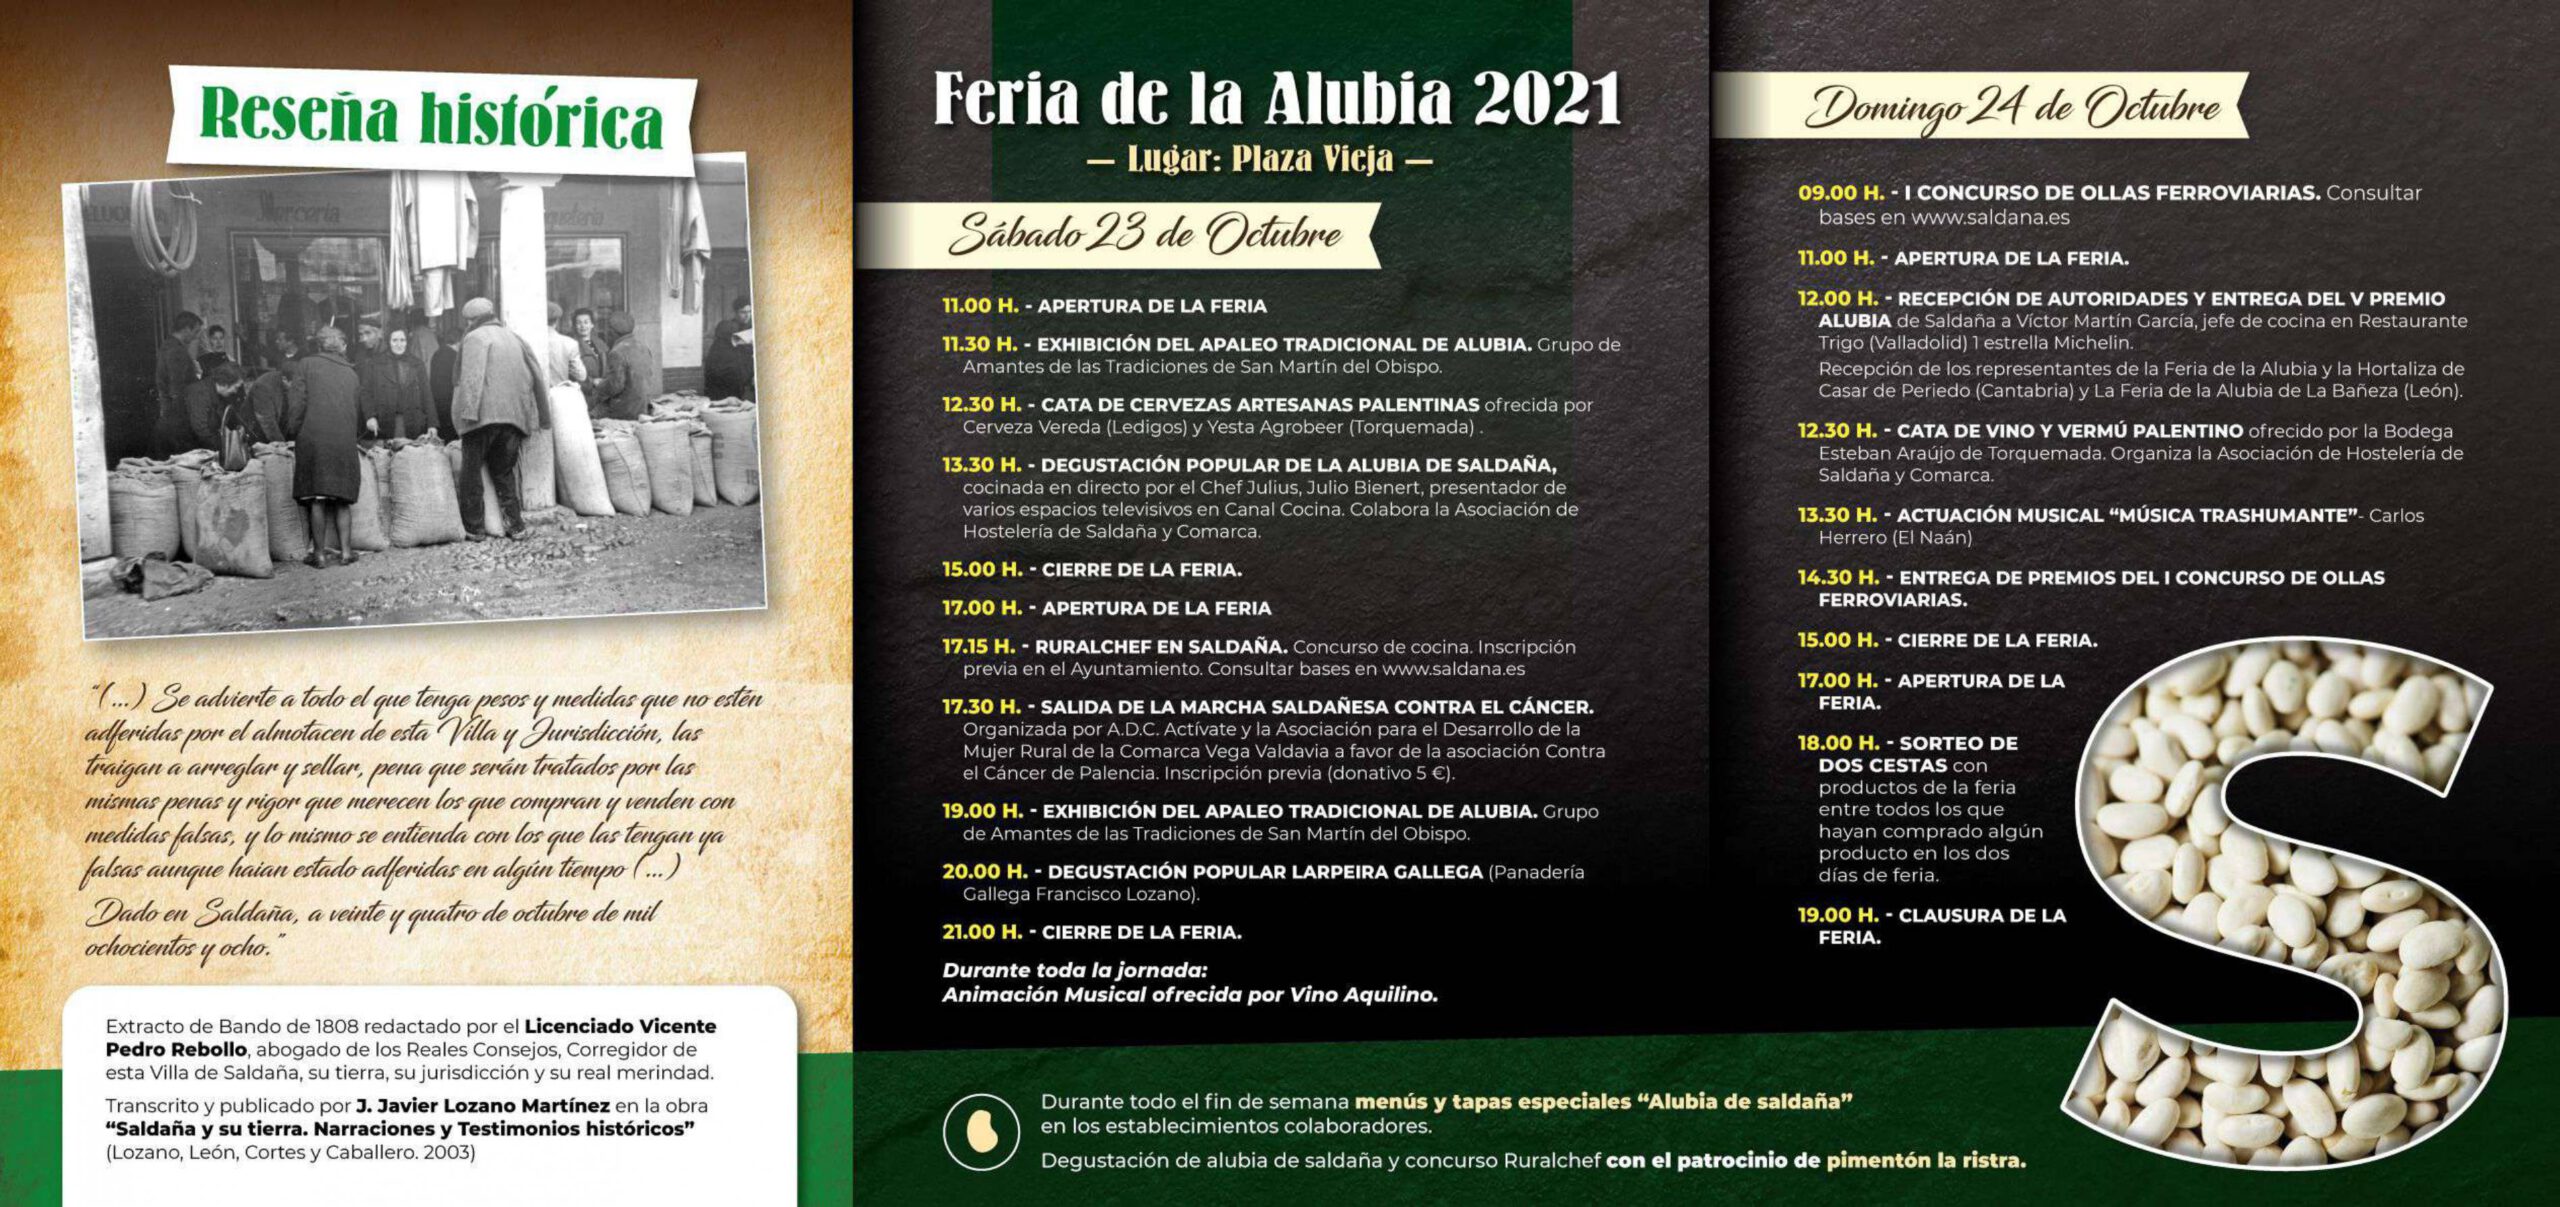 Feria de la Alubia (2021) - Saldaña (Palencia) 2